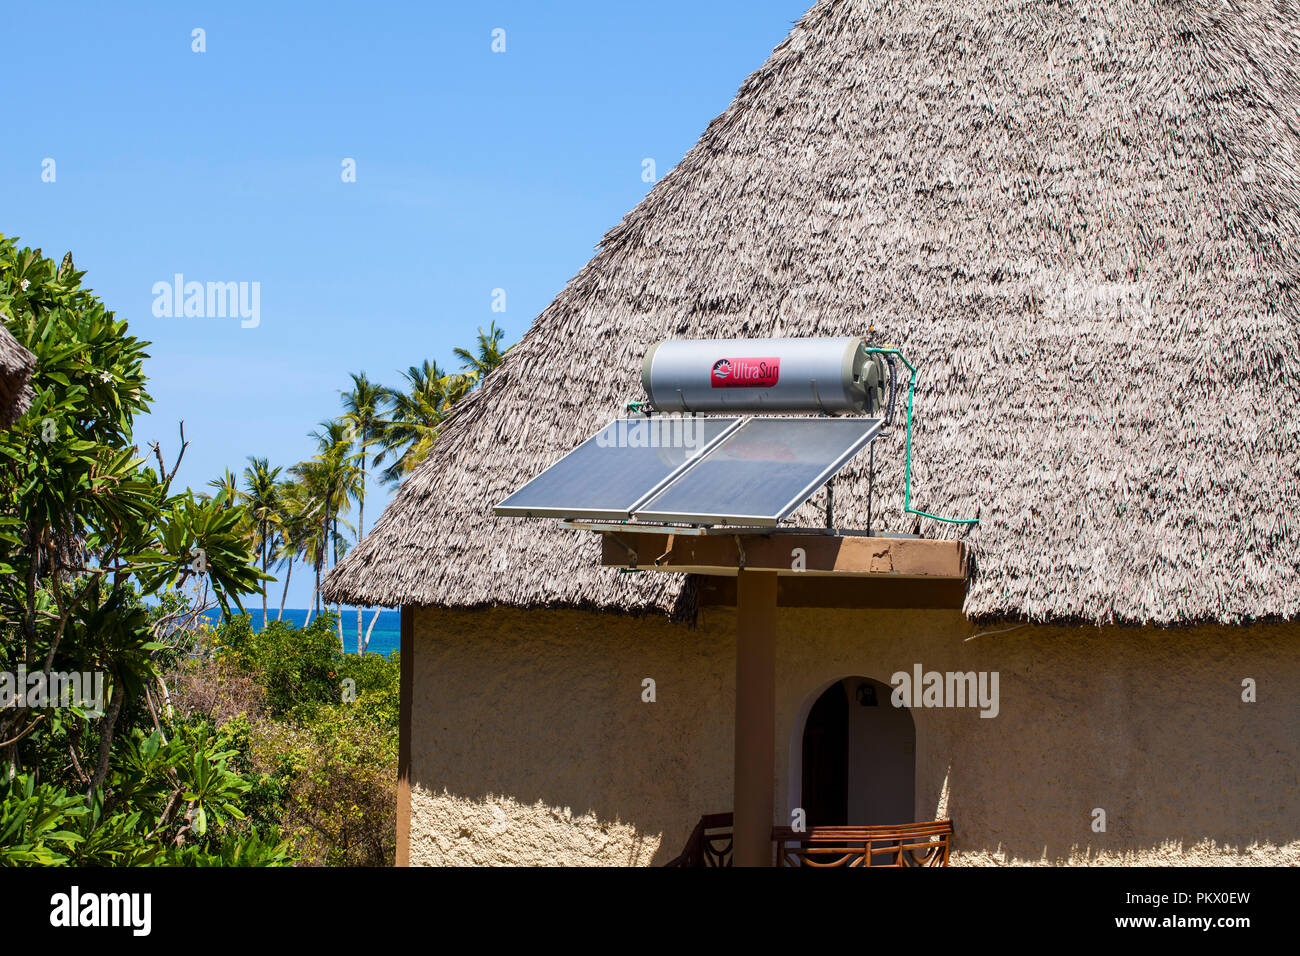 - GALU KINONDO BEACH, KENYA - février 26, 2018 : Systèmes pour le chauffage de l'eau à partir de la lumière solaire ( soleil collecteurs) sur les toits de l'hôtel Neptune Paradise Beach Re Banque D'Images